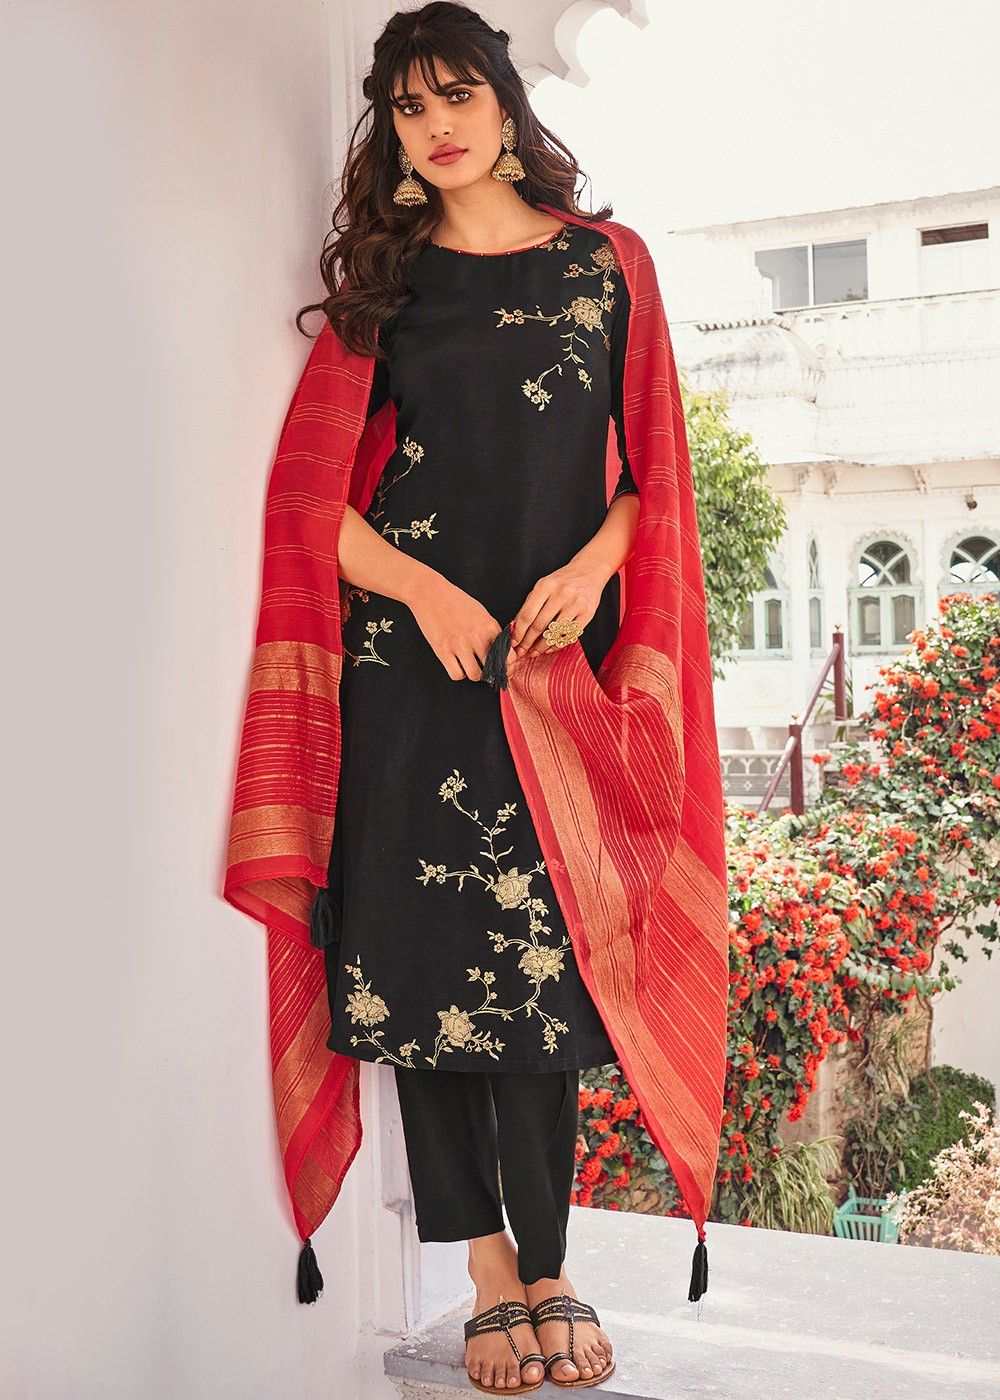 Buy Black And Red Churidar Suit | Churidar Salwar Suits